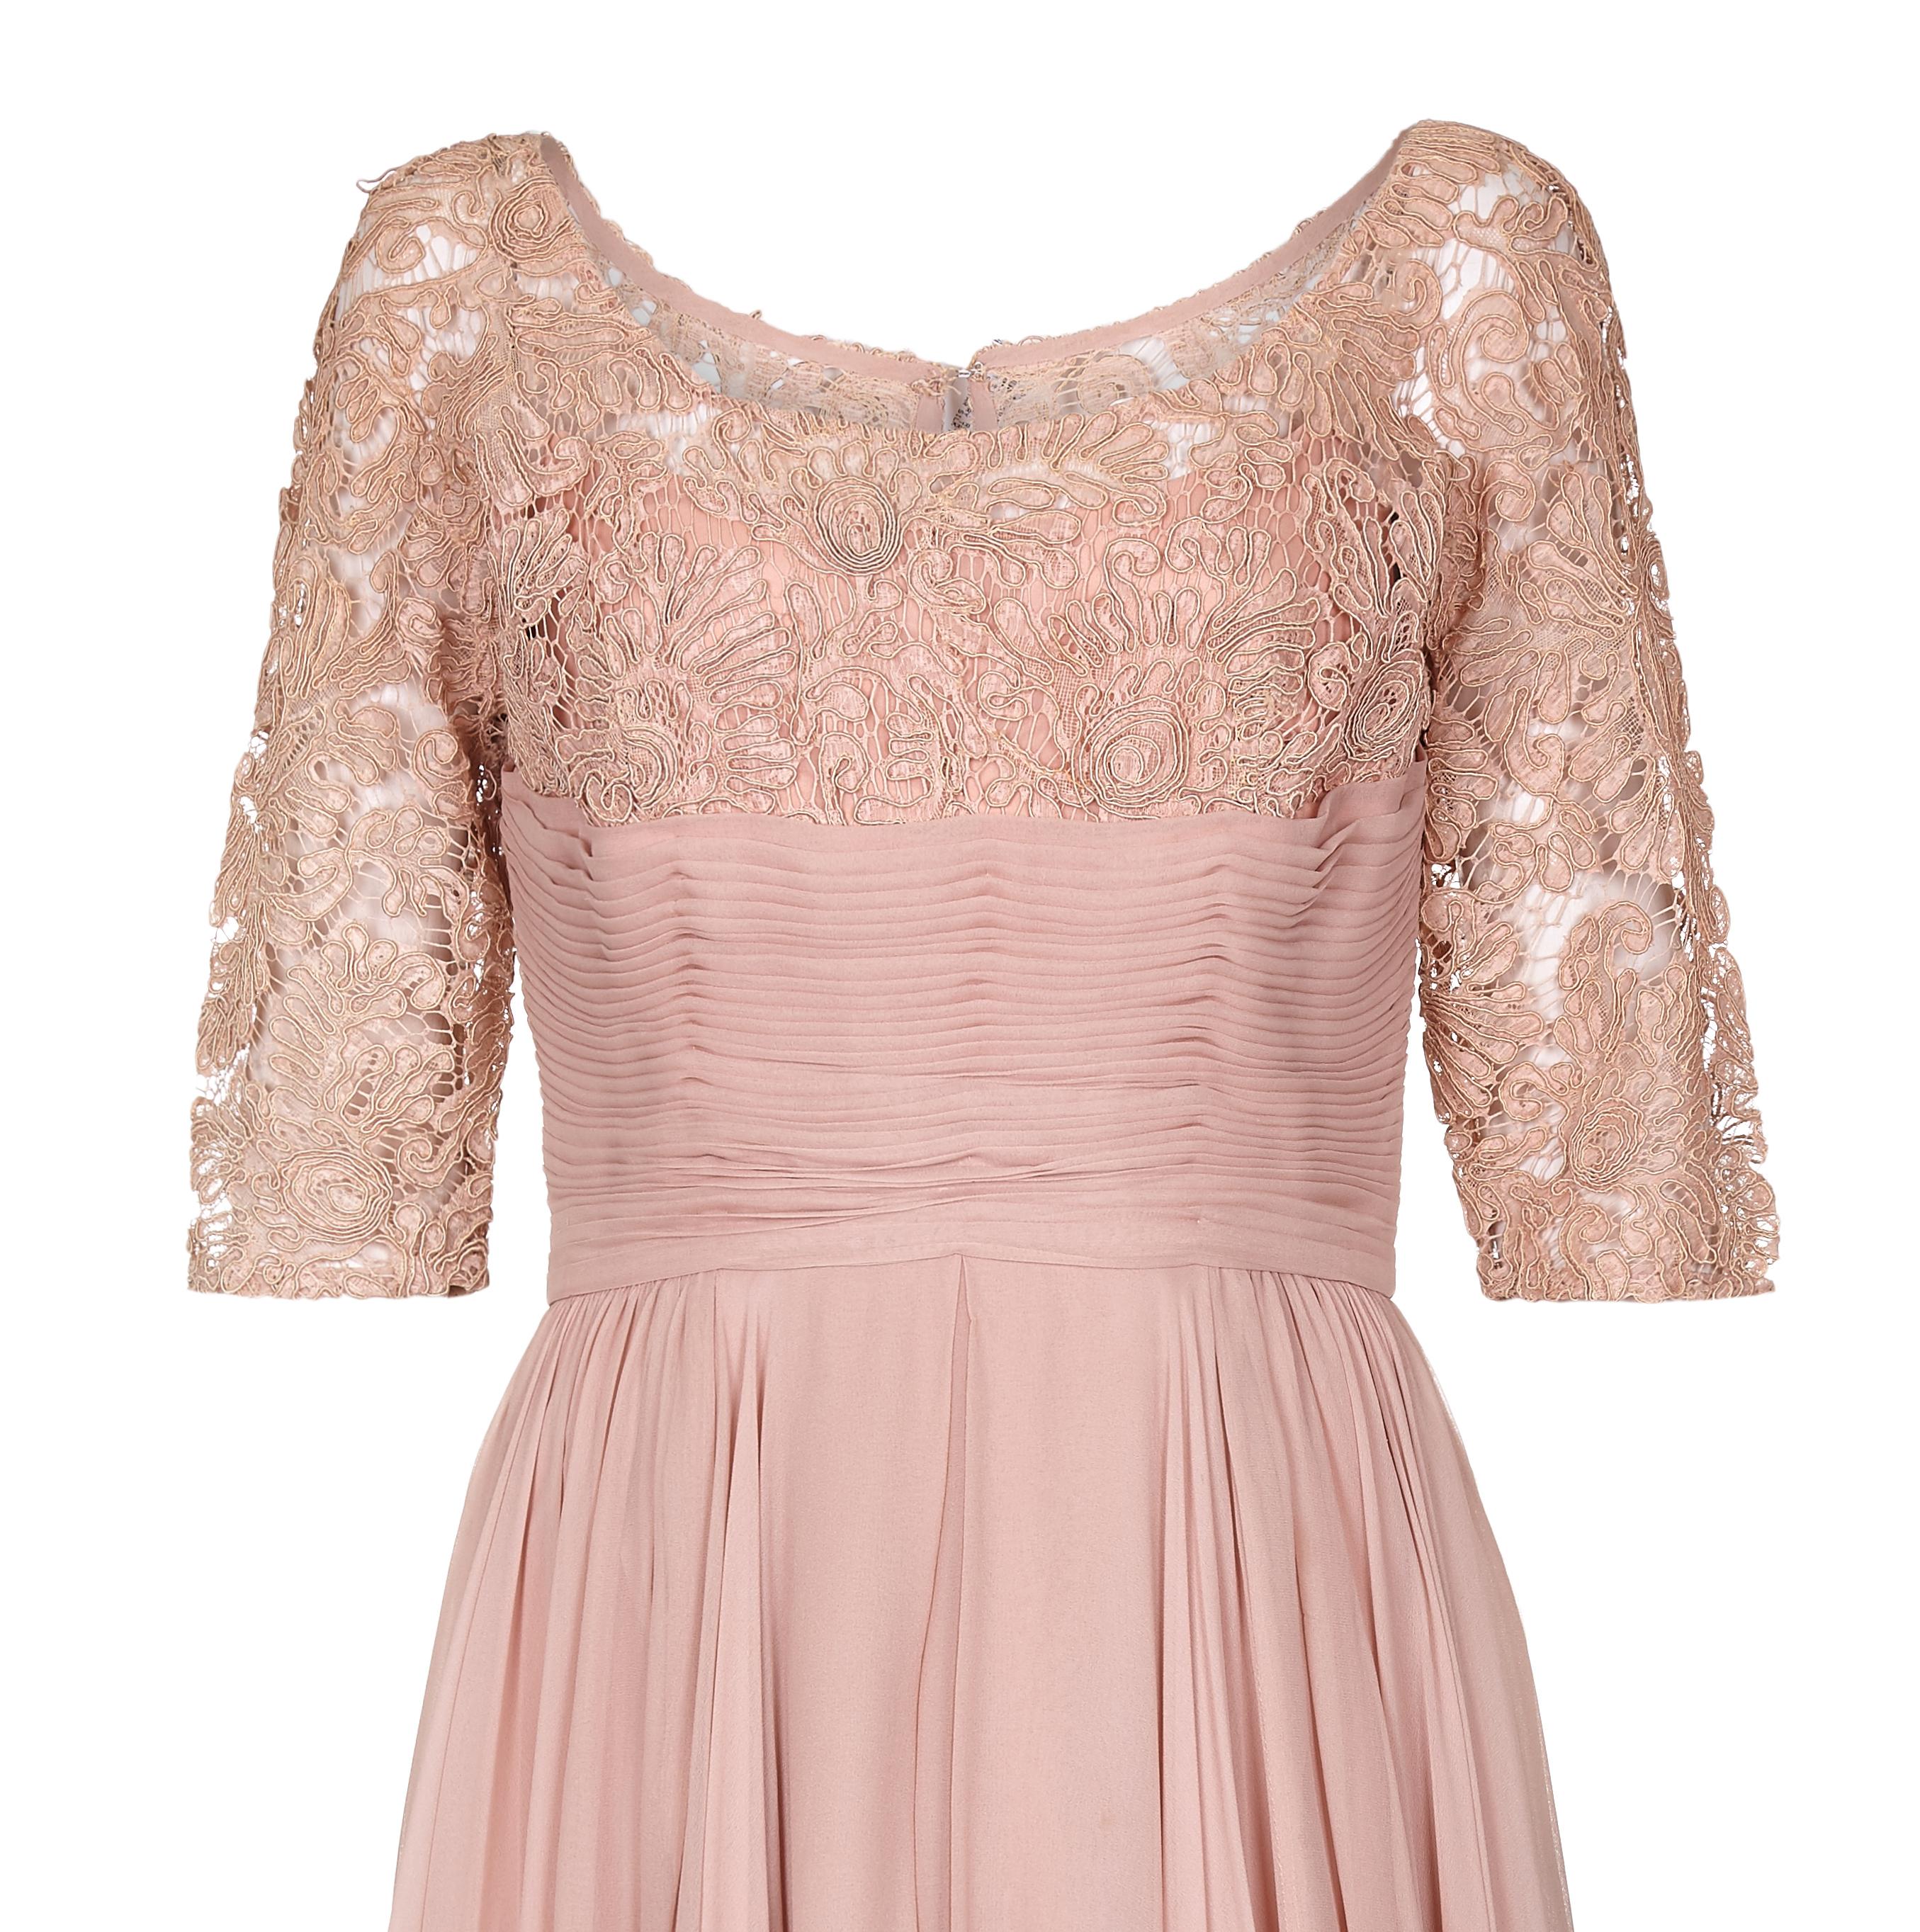 dusky pink chiffon dress